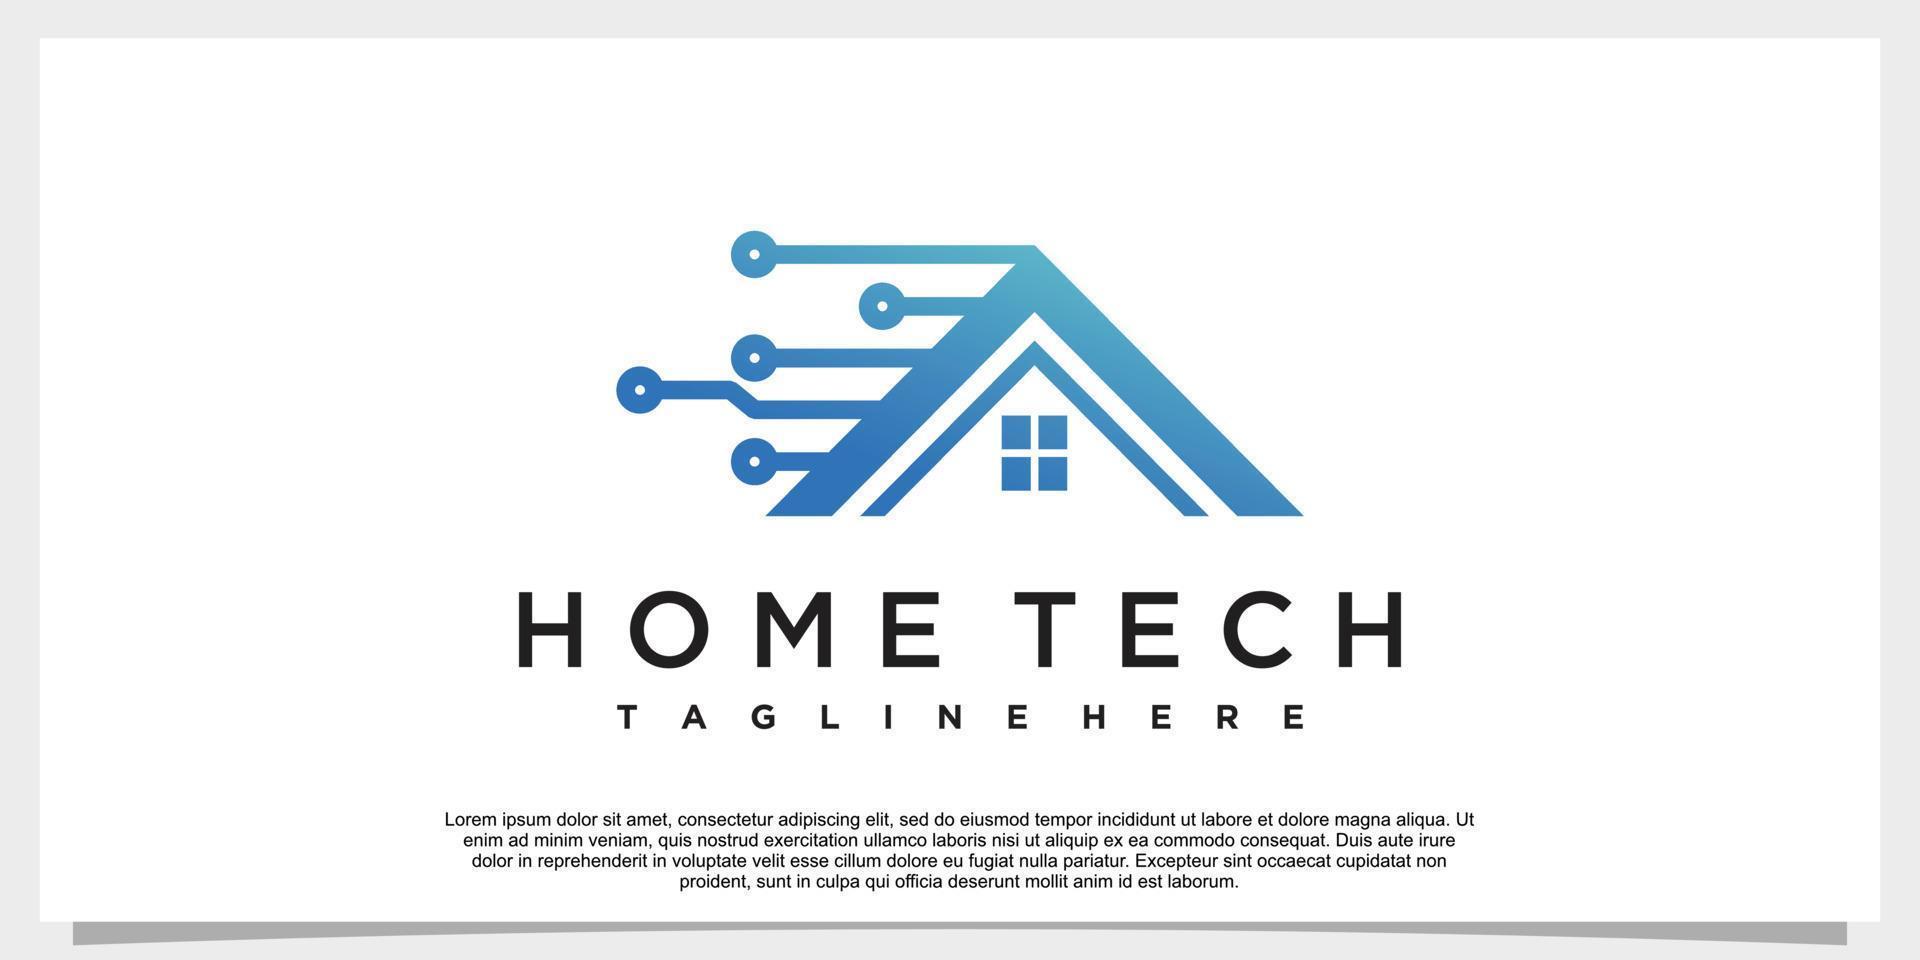 icône de maison intelligente création de logo numérique électronique puce contrôle maison logo concept icône vecteur premium